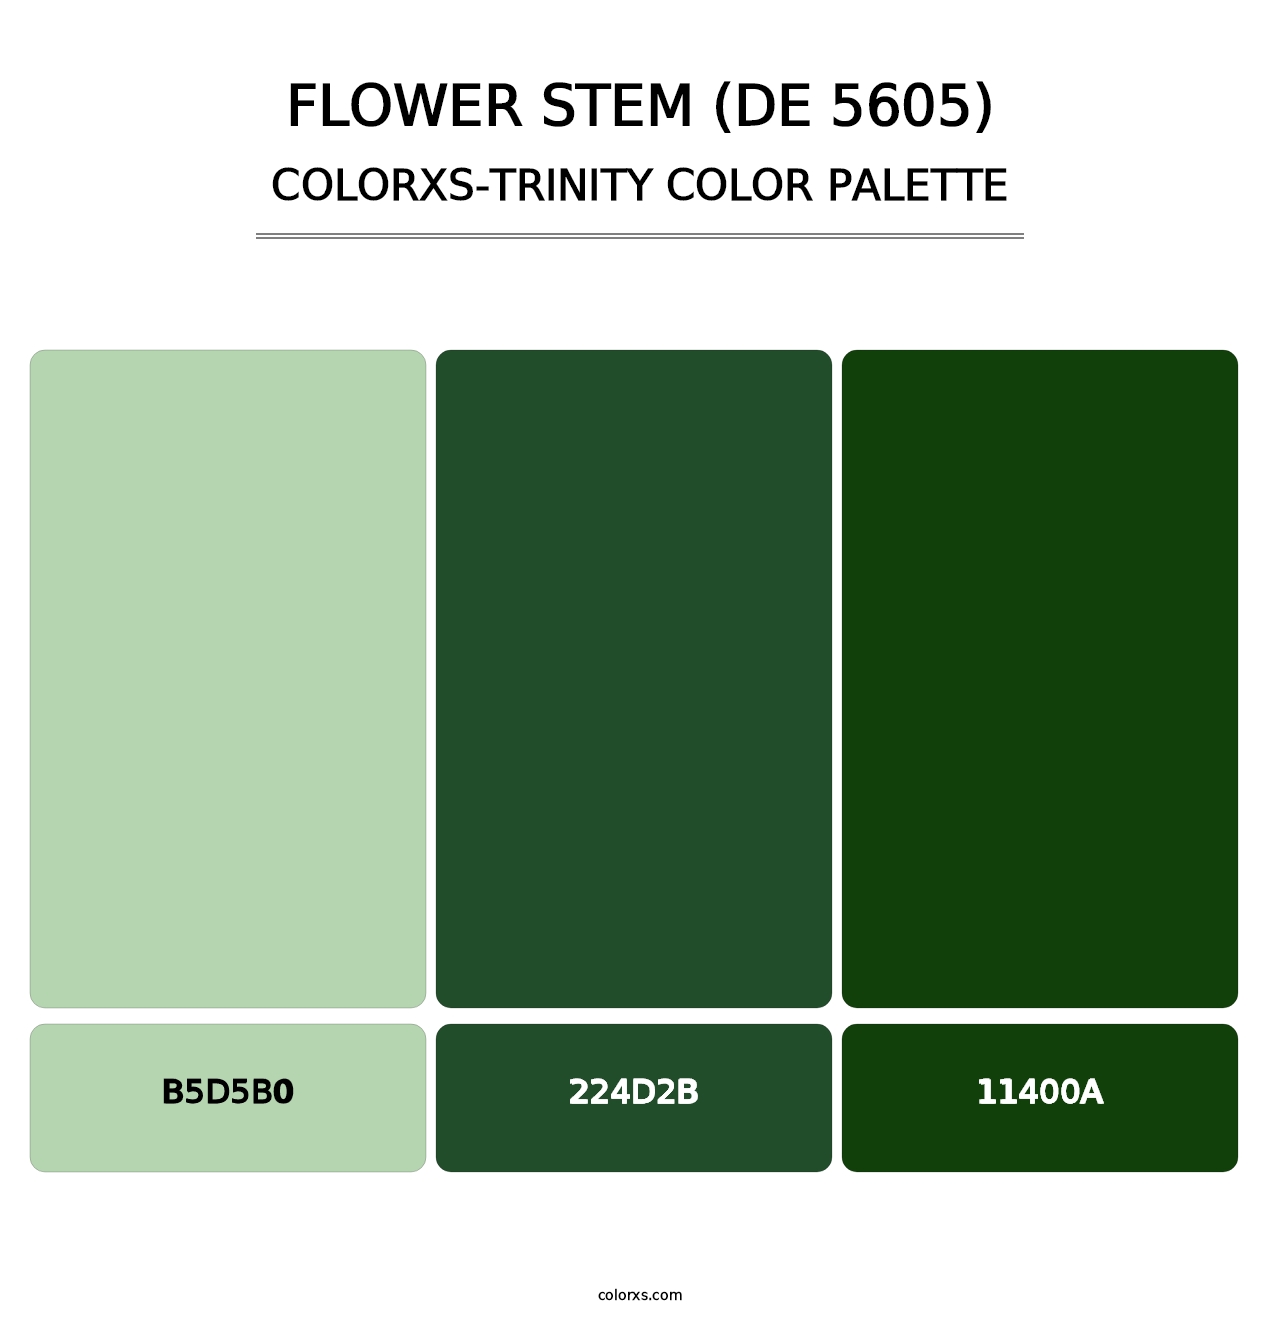 Flower Stem (DE 5605) - Colorxs Trinity Palette